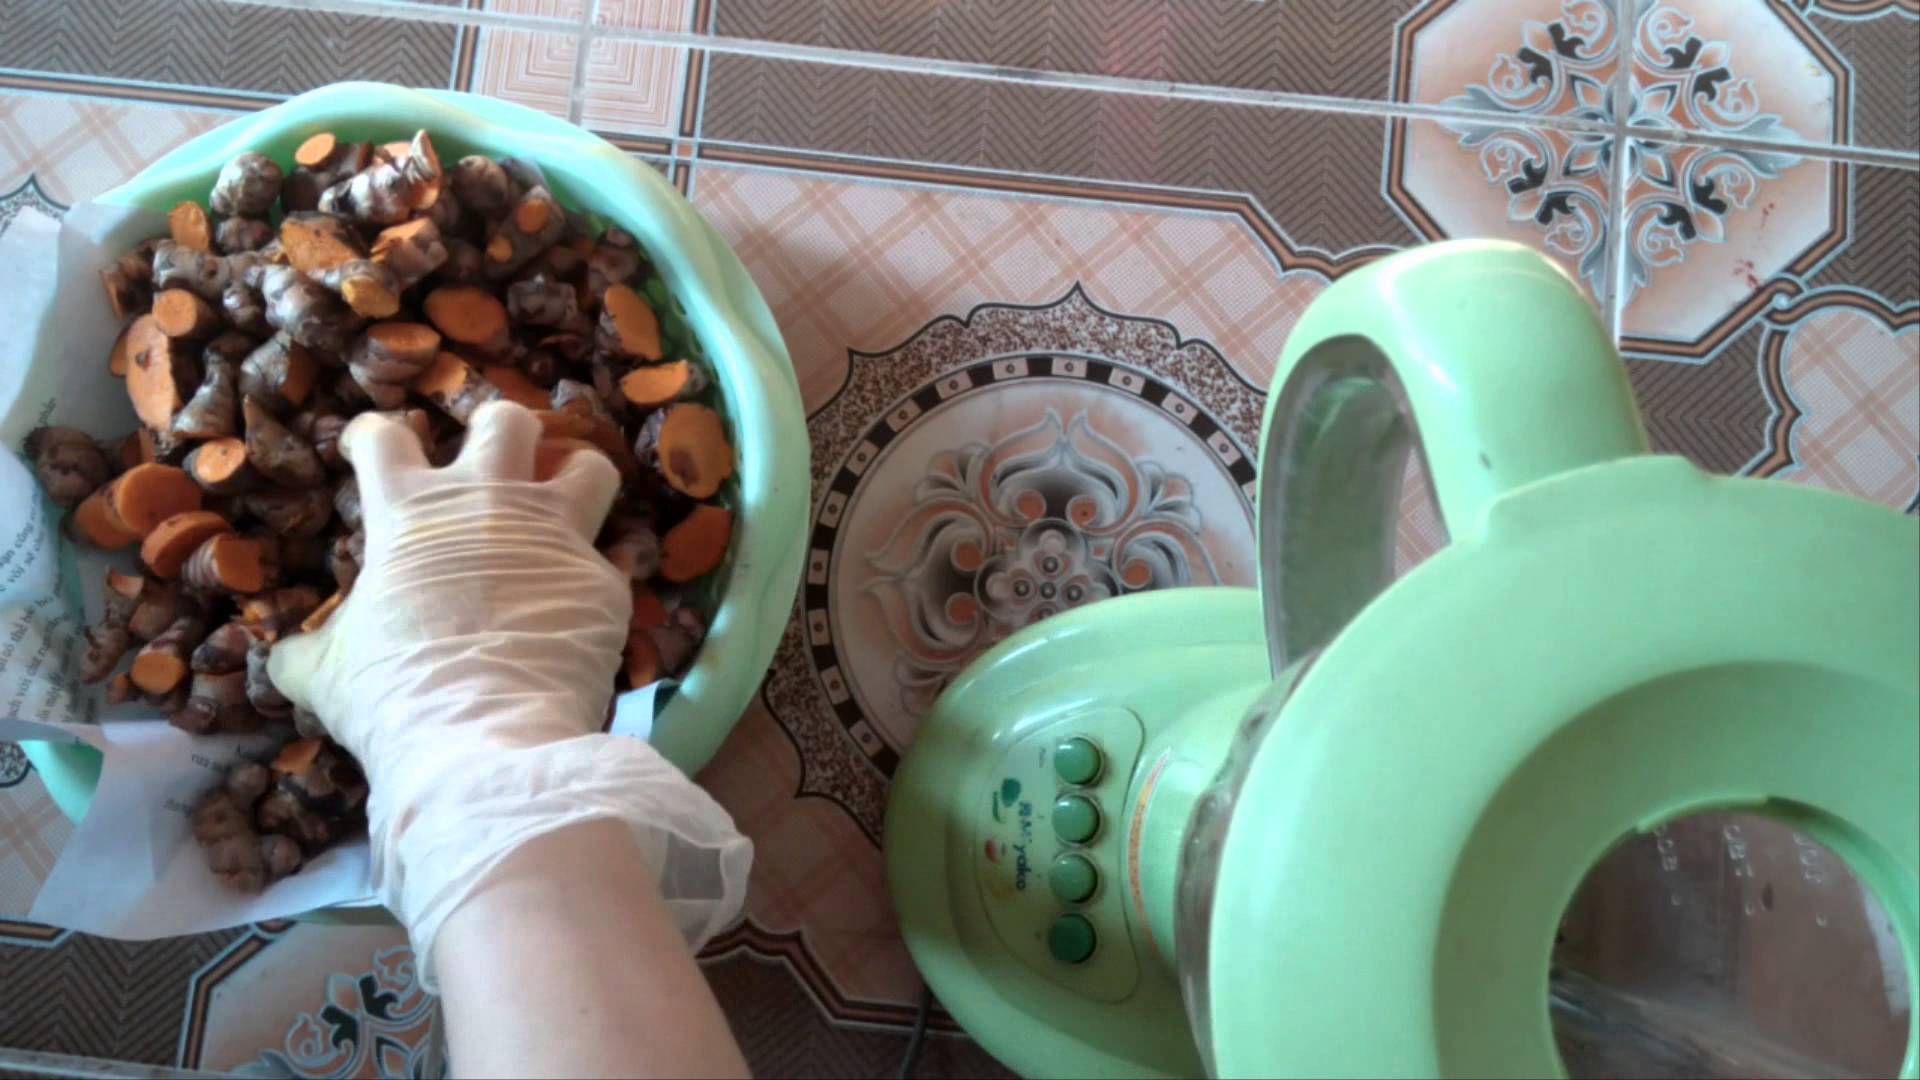 Kinh nghiệm chọn nguyên liệu trong cách làm tinh bột nghệ tại nhà.